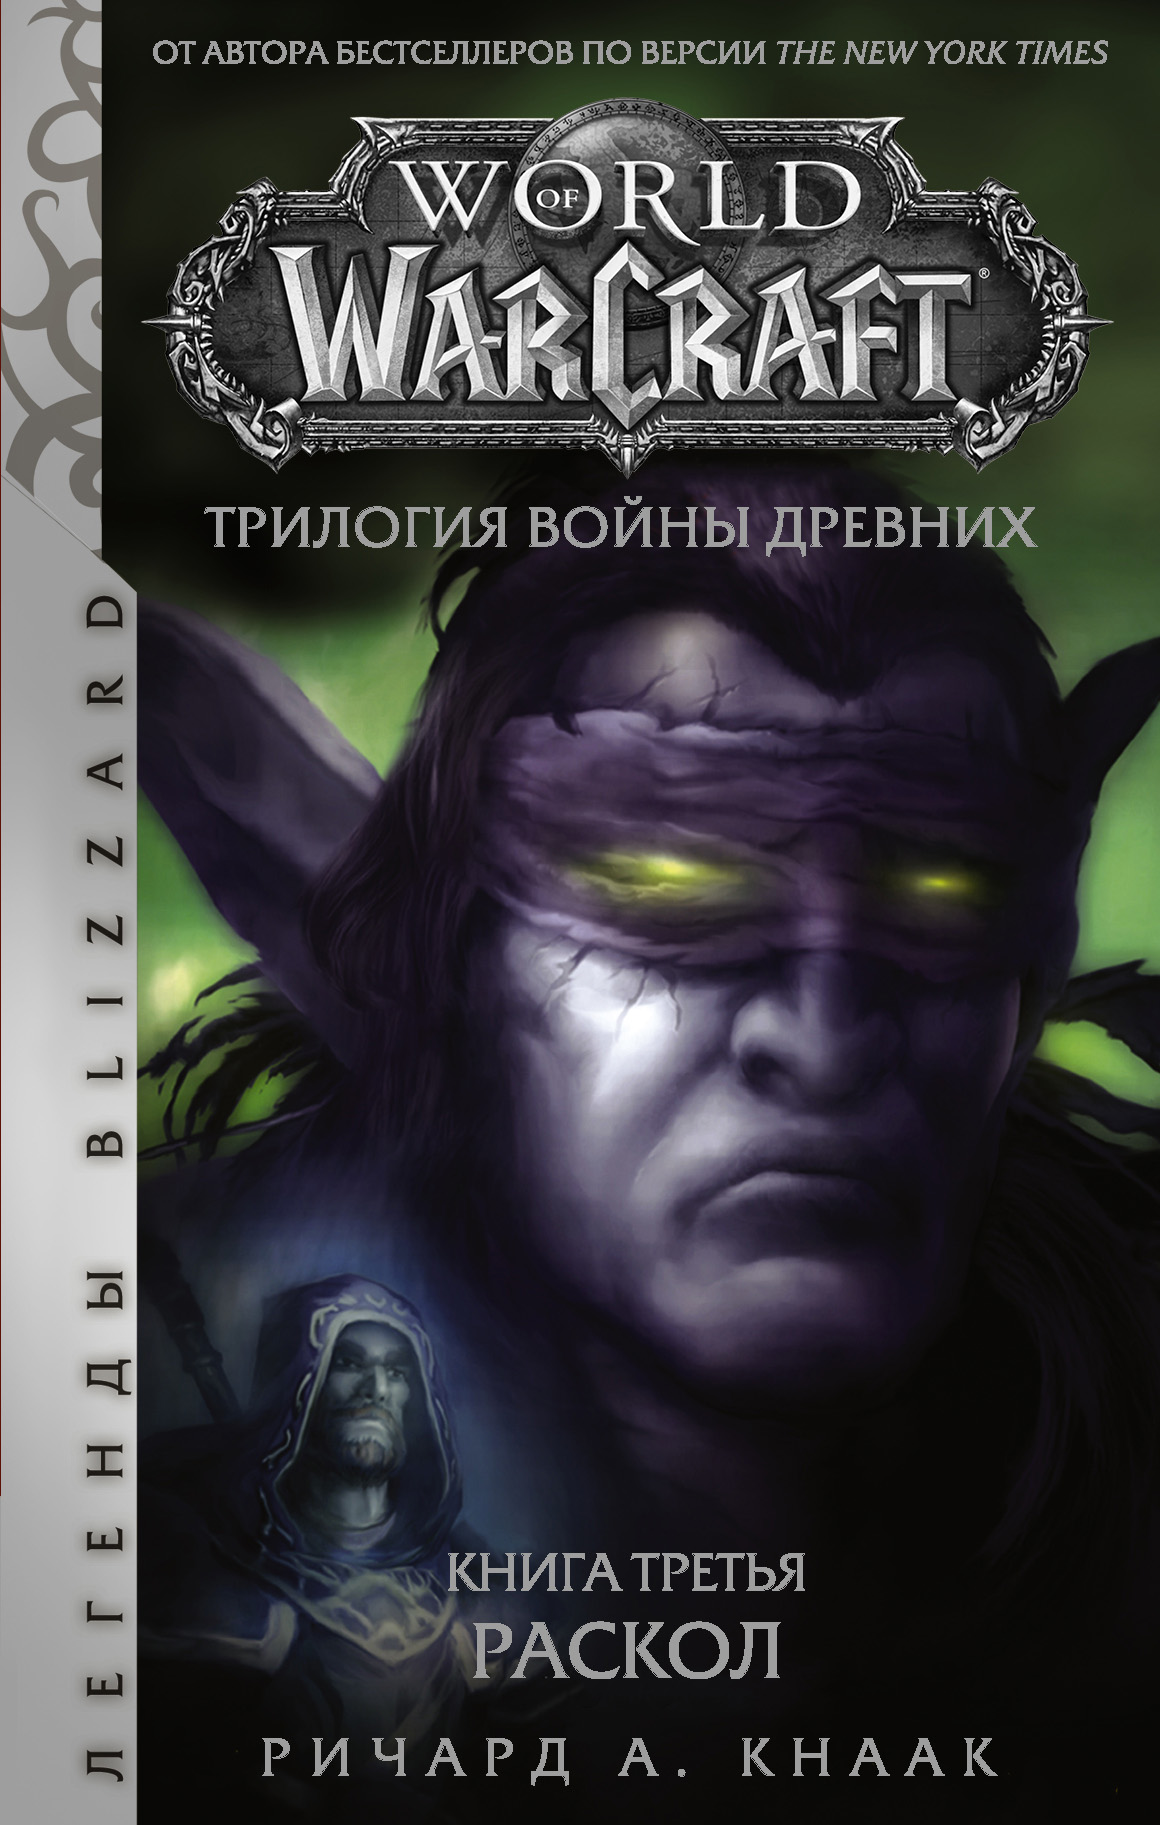 World of Warcraft. Трилогия Войны Древних: Раскол читать онлайн